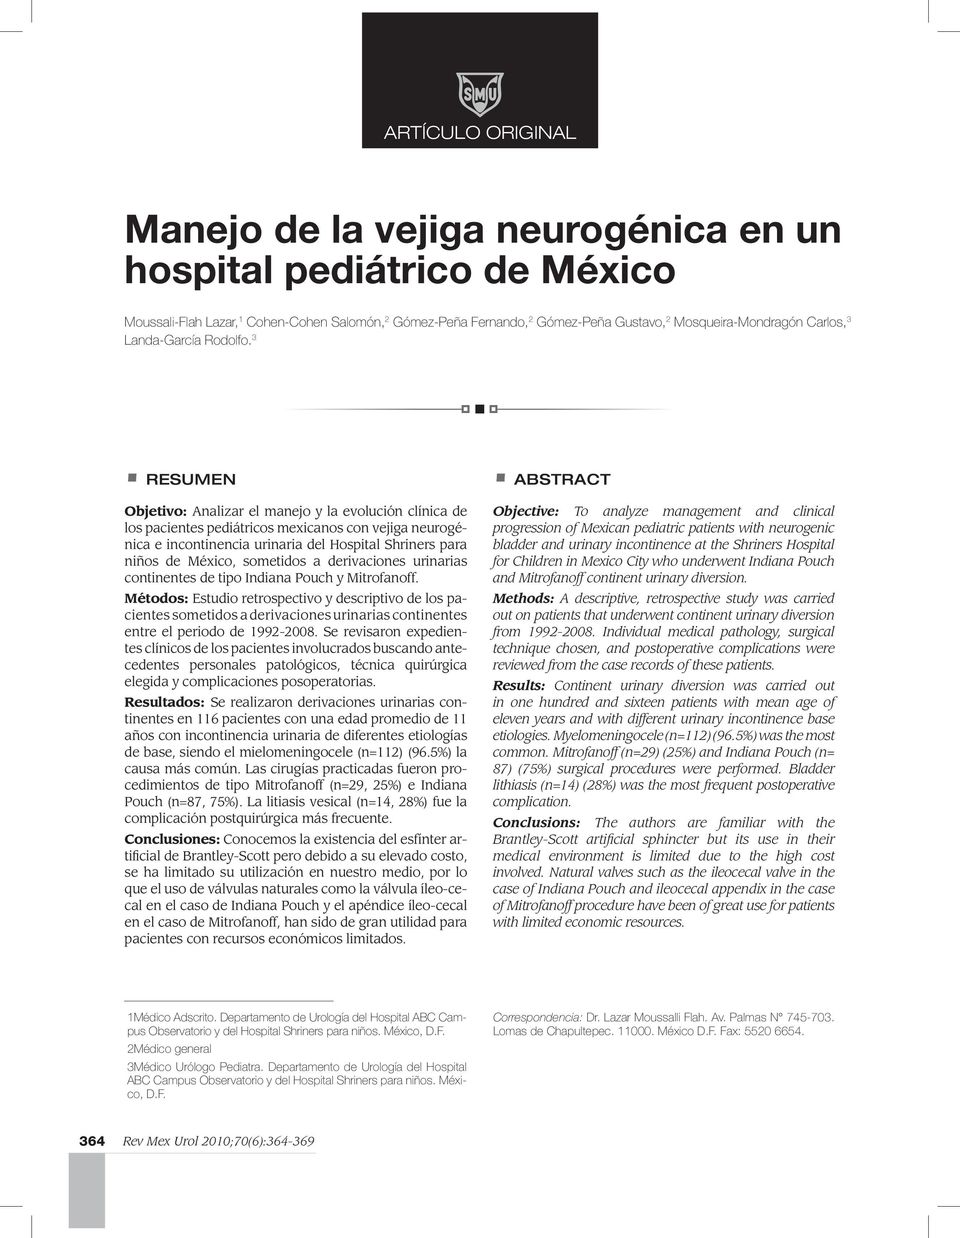 3 RESUMEN Objetivo: Analizar el manejo y la evolución clínica de los pacientes pediátricos mexicanos con vejiga neurogénica e incontinencia urinaria del Hospital Shriners para niños de México,